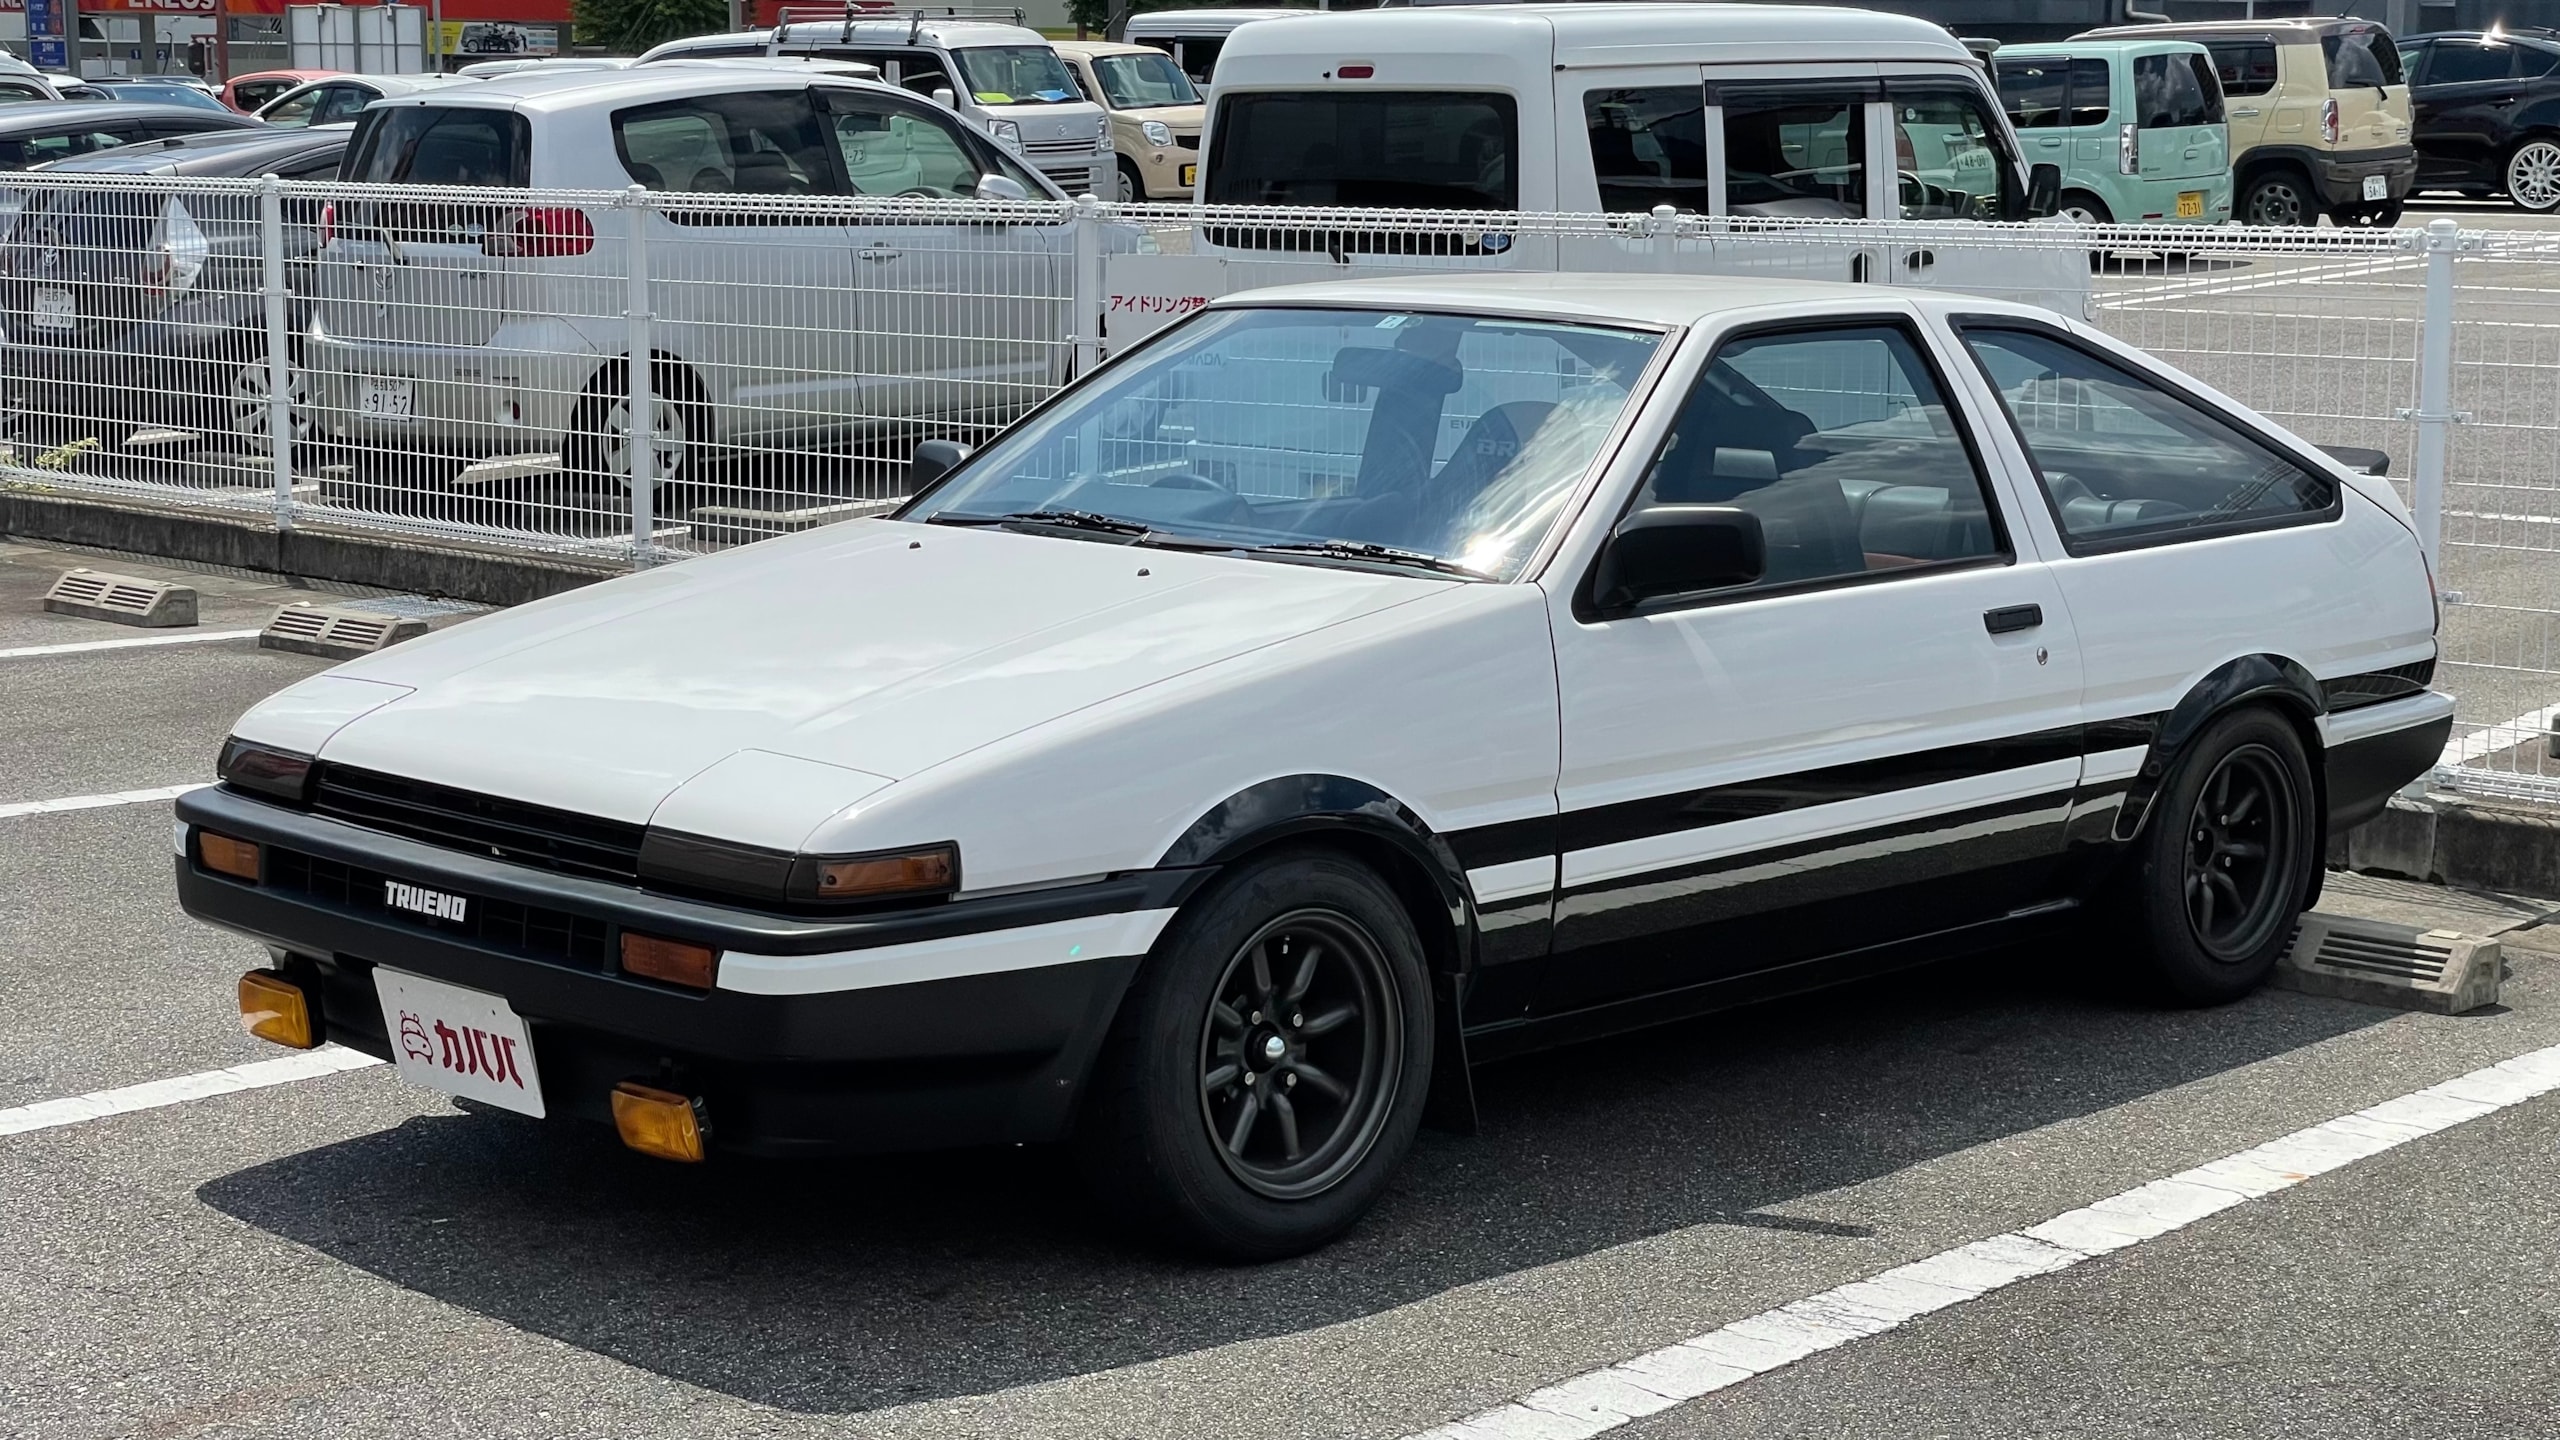 スプリンタートレノ GTV(トヨタ)1984年式 350万円の中古車 - 自動車